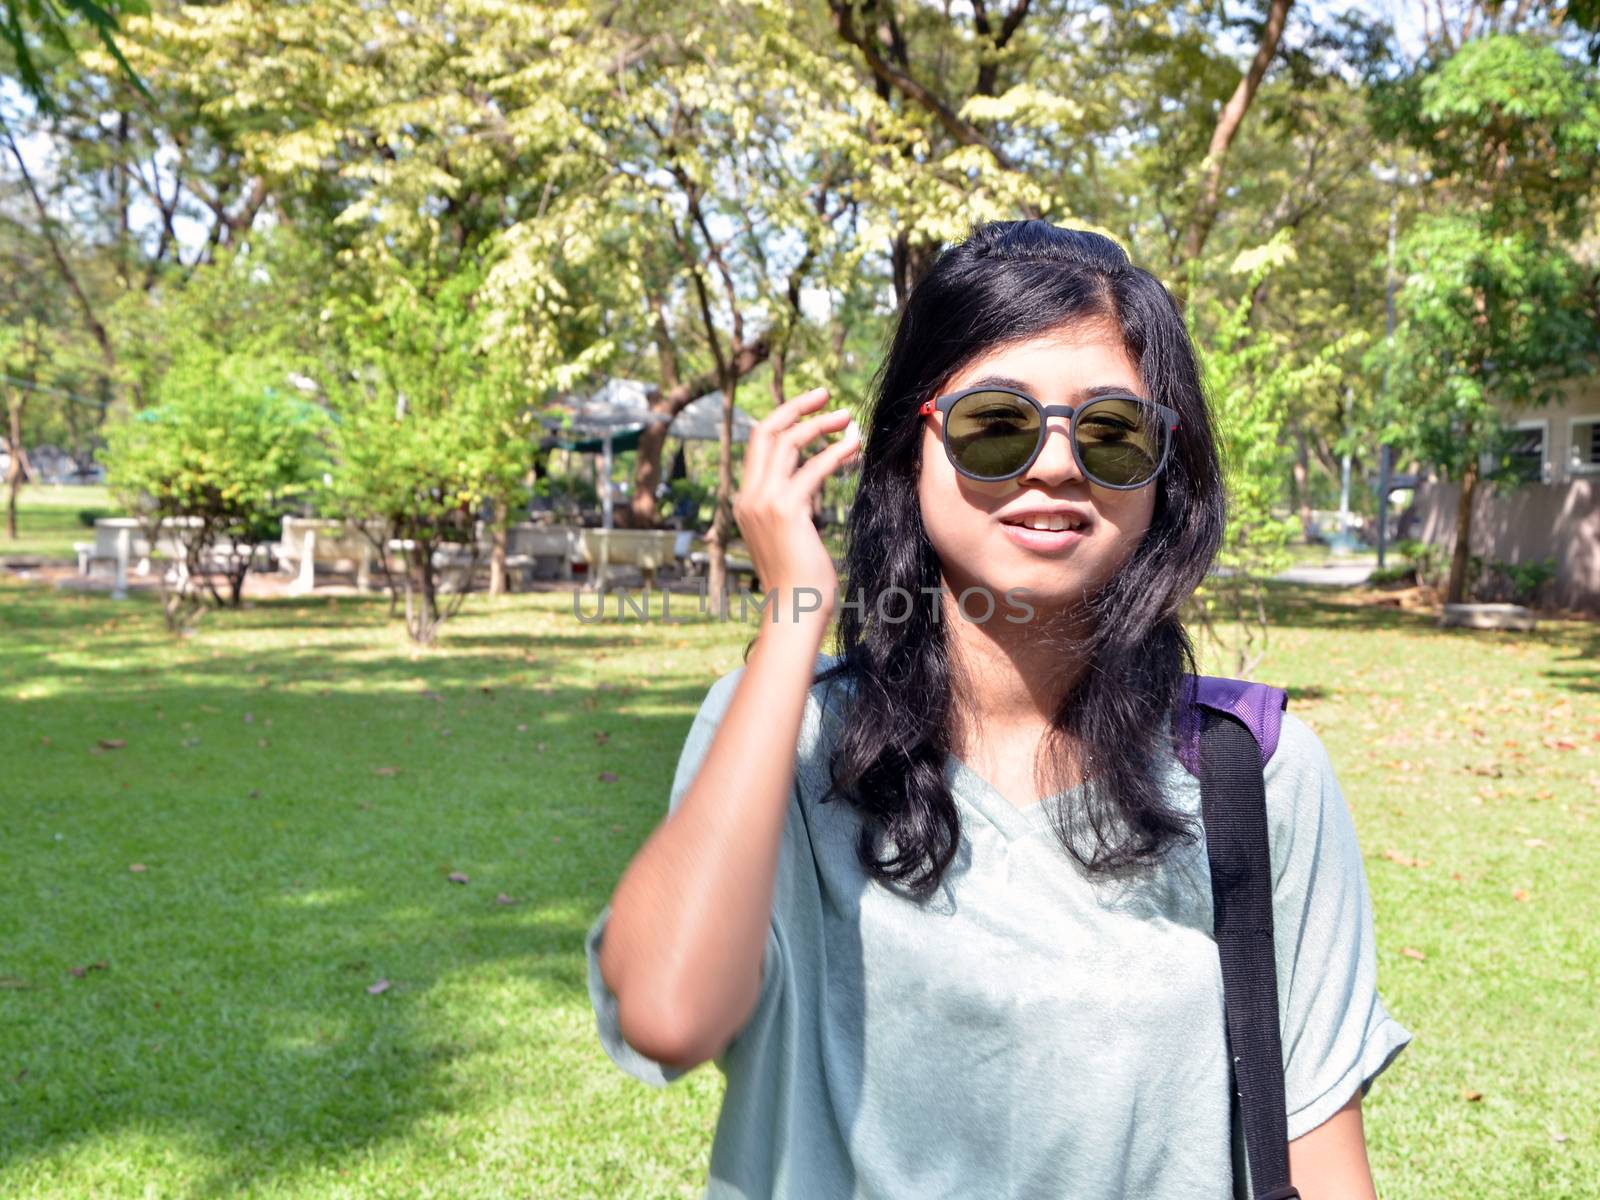 Young woman looking at camera through sunglasses by siraanamwong